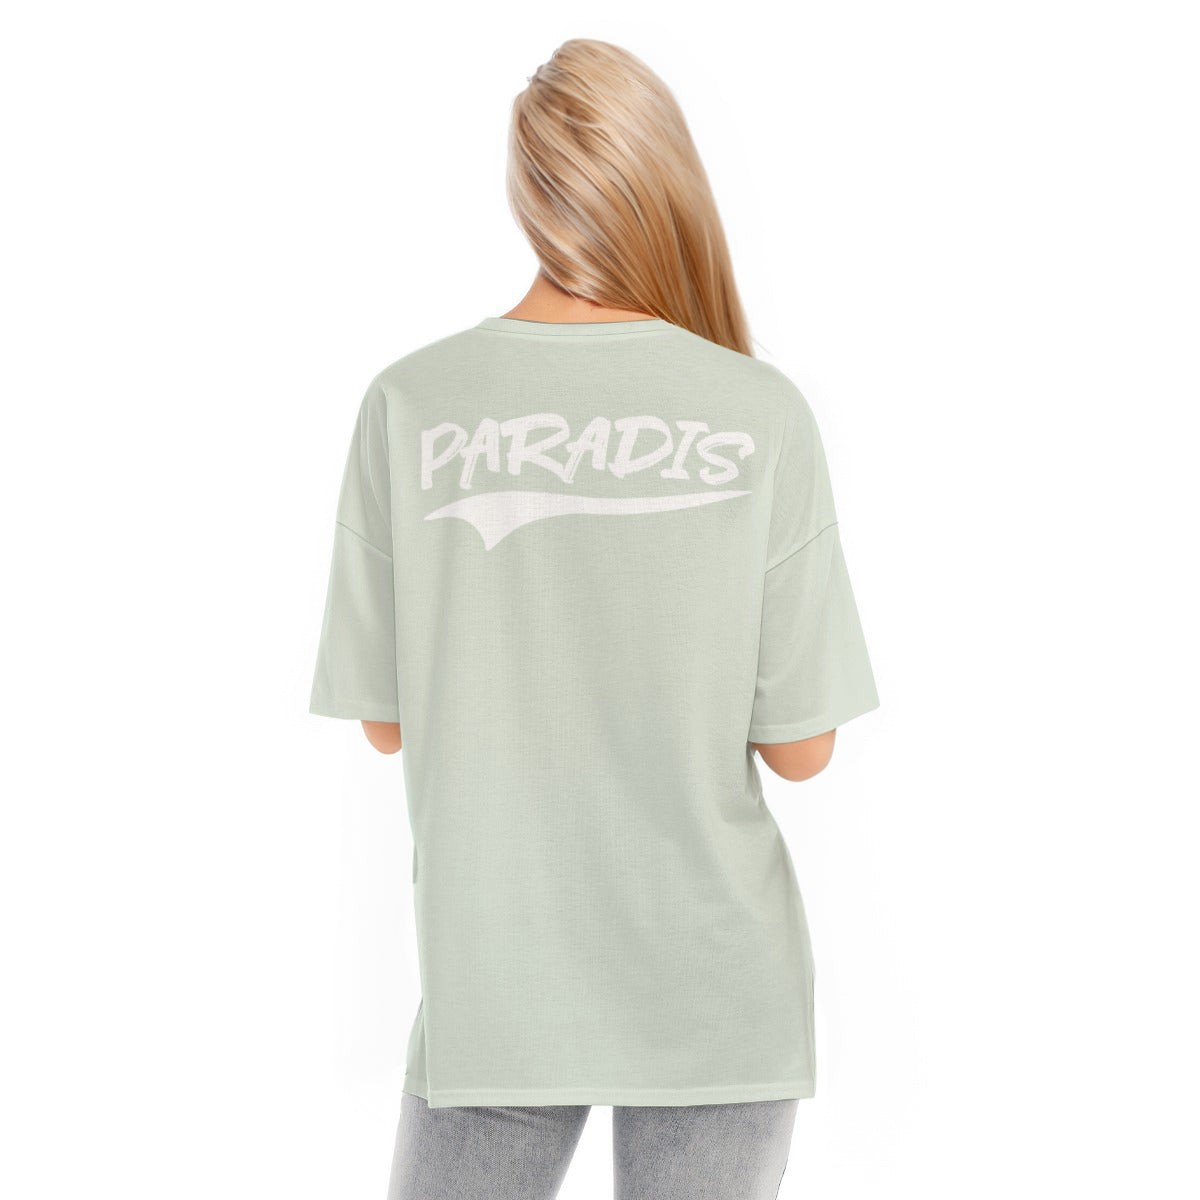 PARADIS - Pastel Lime T-shirt - Hem Split | T-SHIRT | PARADIS SVP